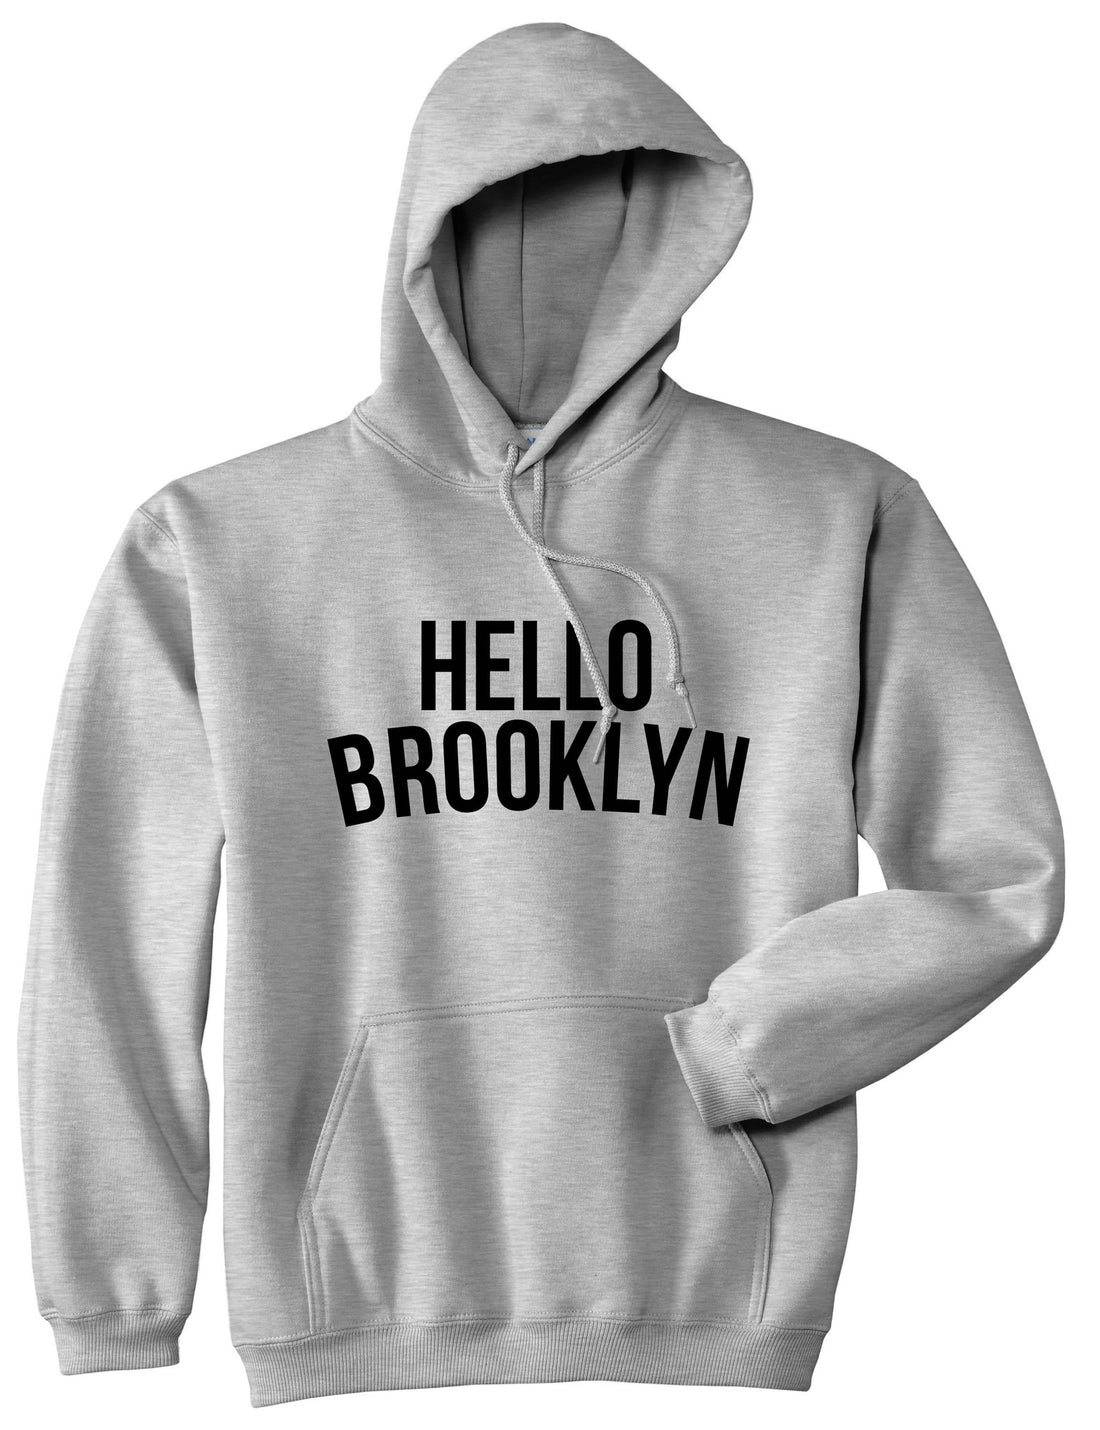 Hello Brooklyn Boys Kids Pullover Hoodie Hoody in Grey By Kings Of NY